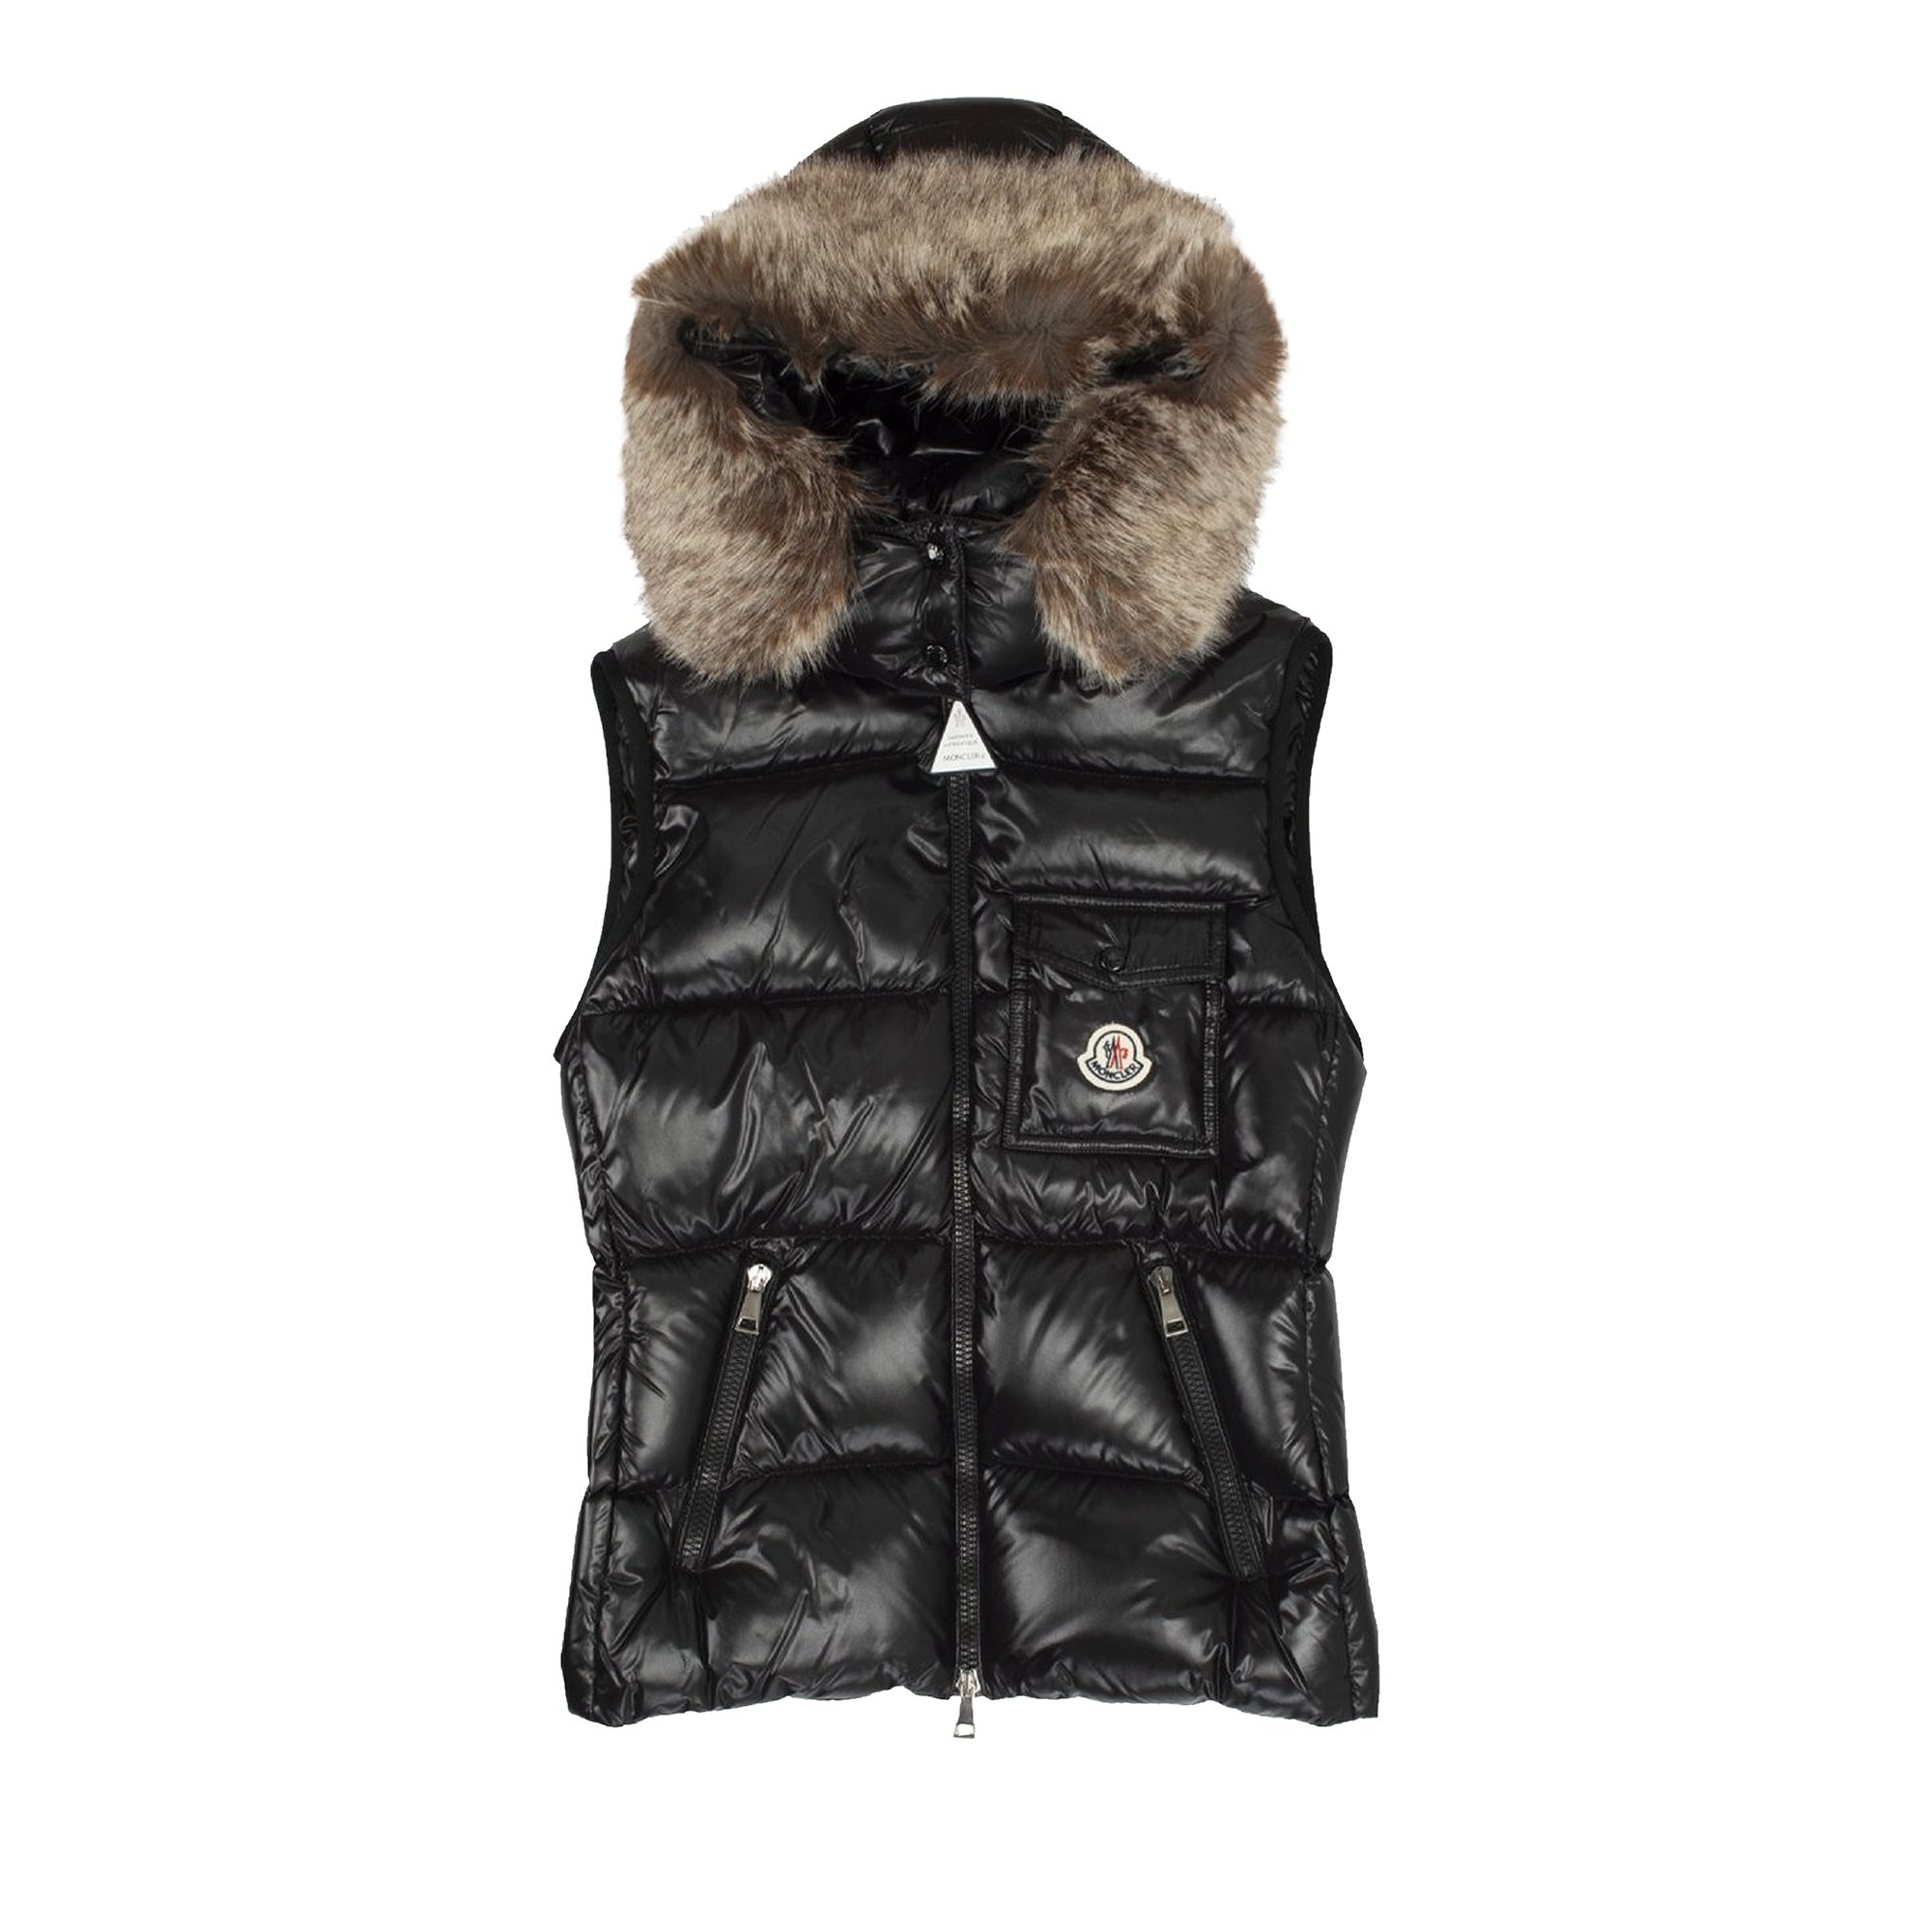 Buy Moncler Balabio Faux Fur Vest 'Black' - 1A000 77 68950 999 | GOAT